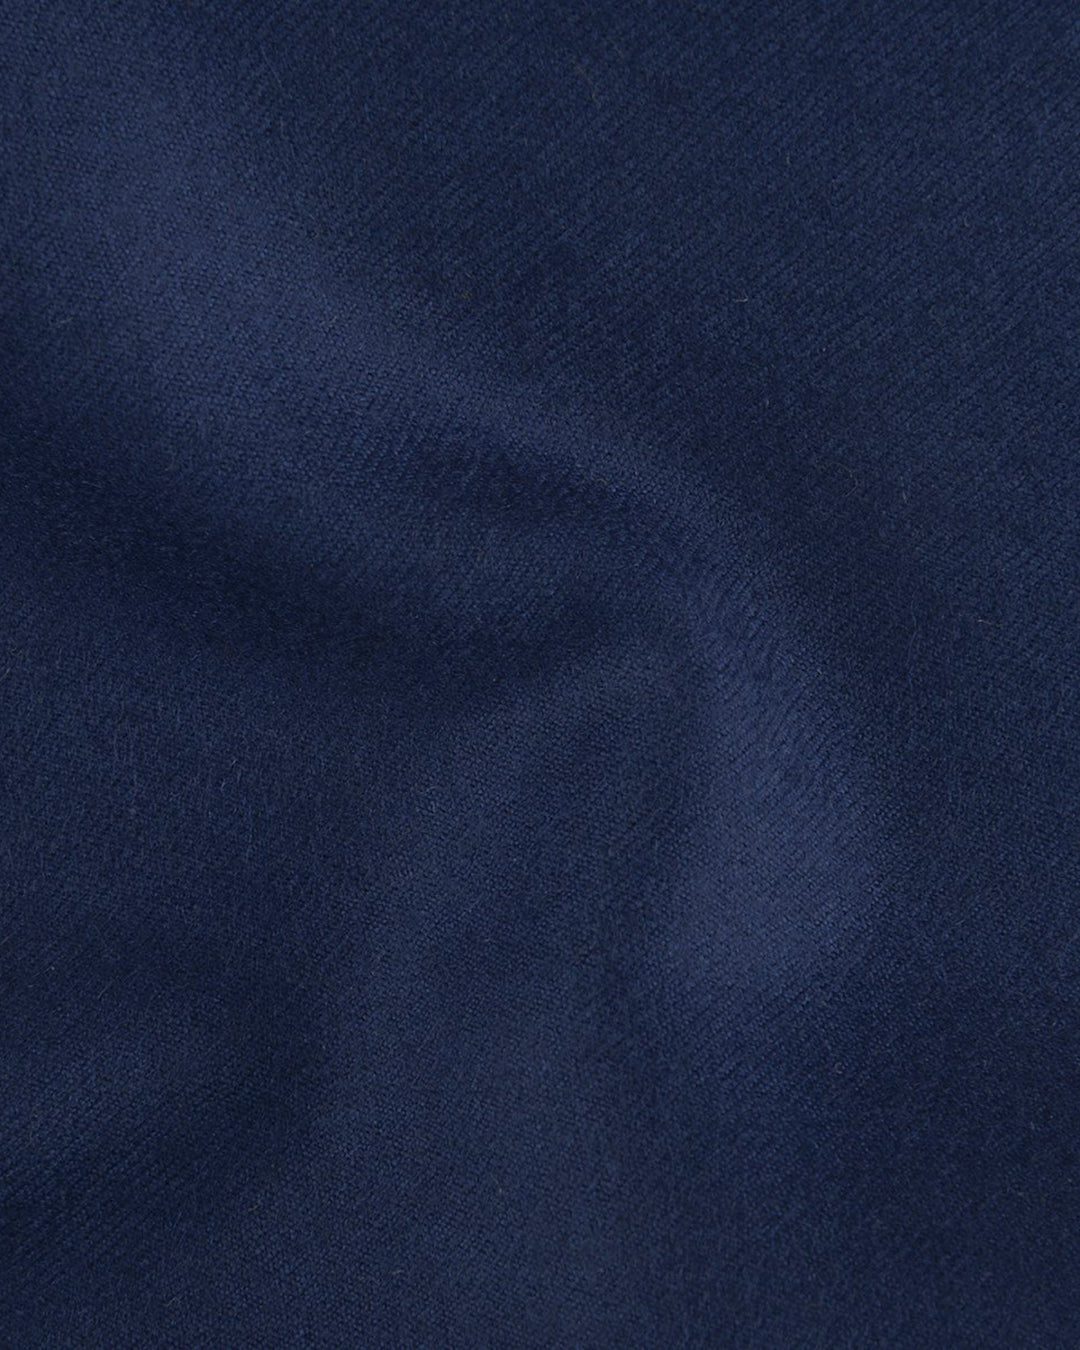 EThomas Wool Cashmere: Blue Twill Jacket